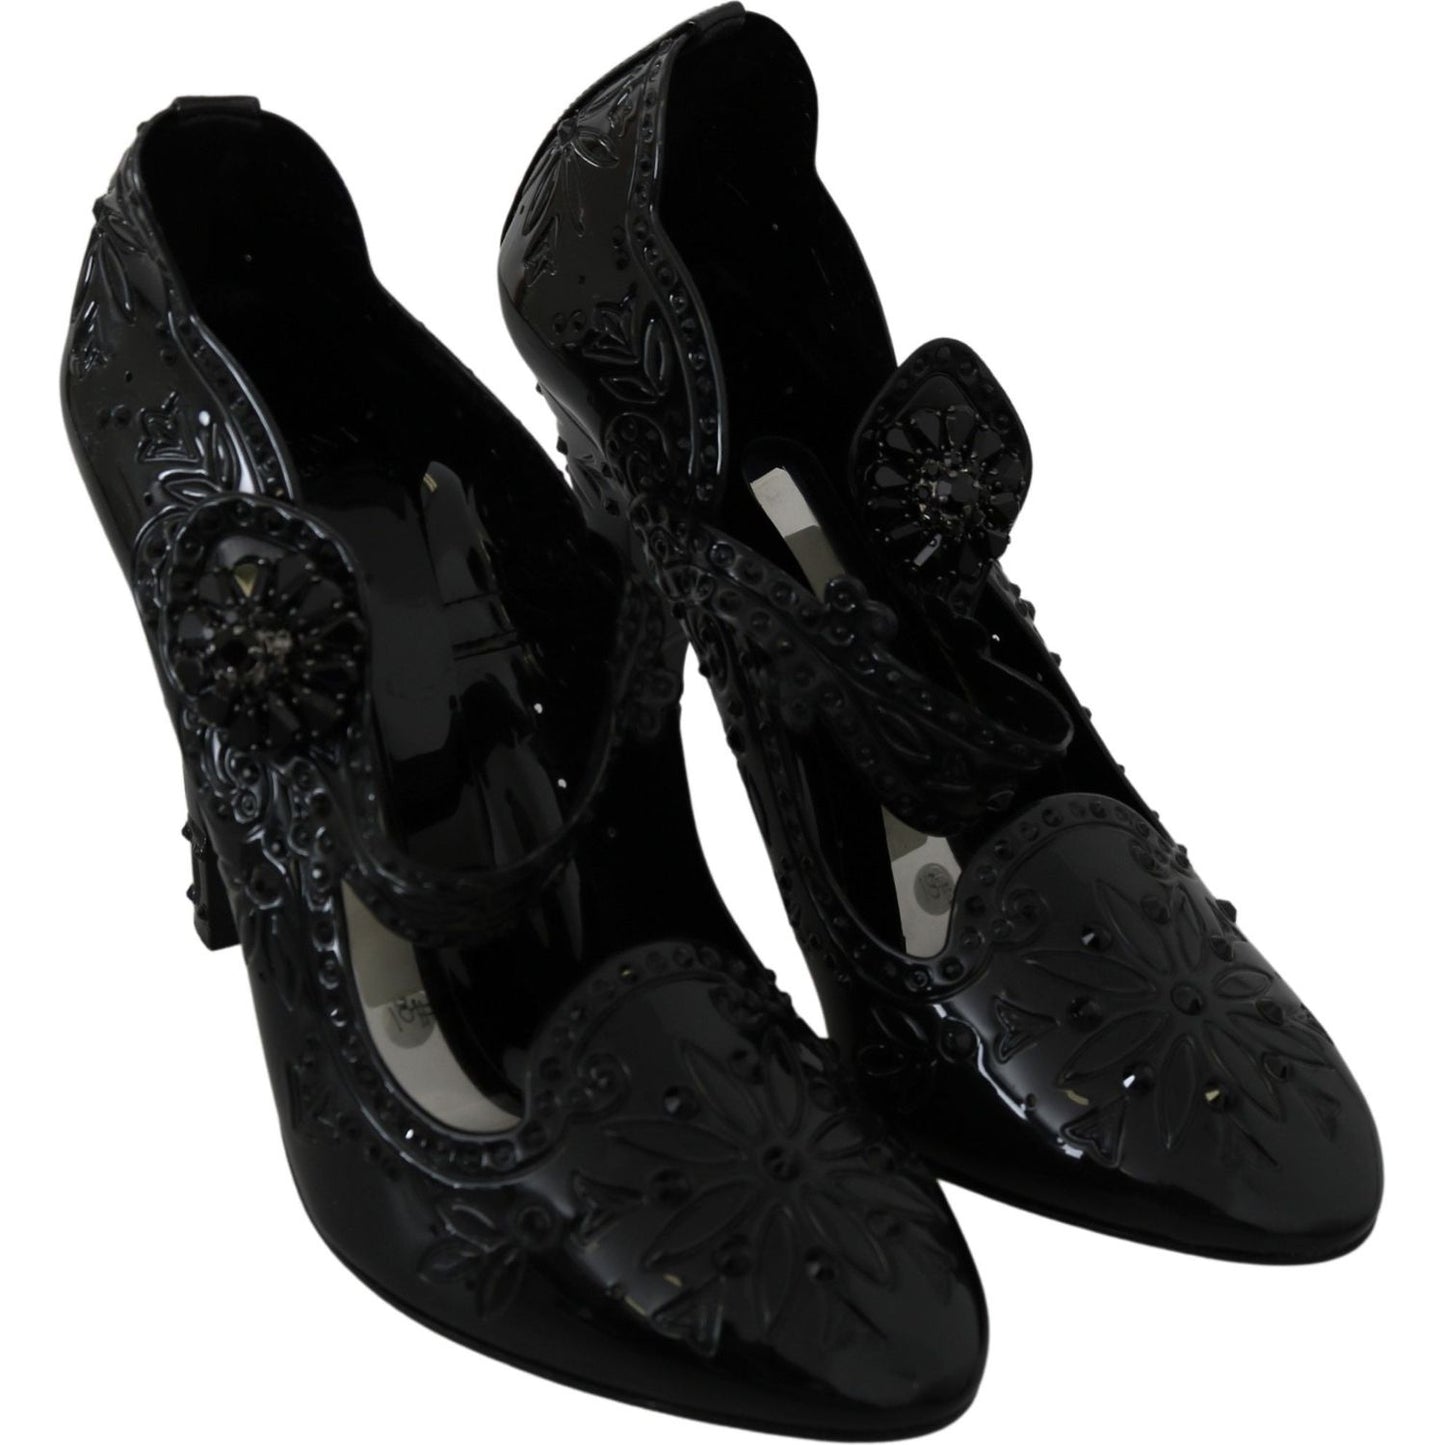 Dolce & Gabbana Elegant Crystal Embellished Cinderella Pumps black-floral-crystal-cinderella-heels-shoes